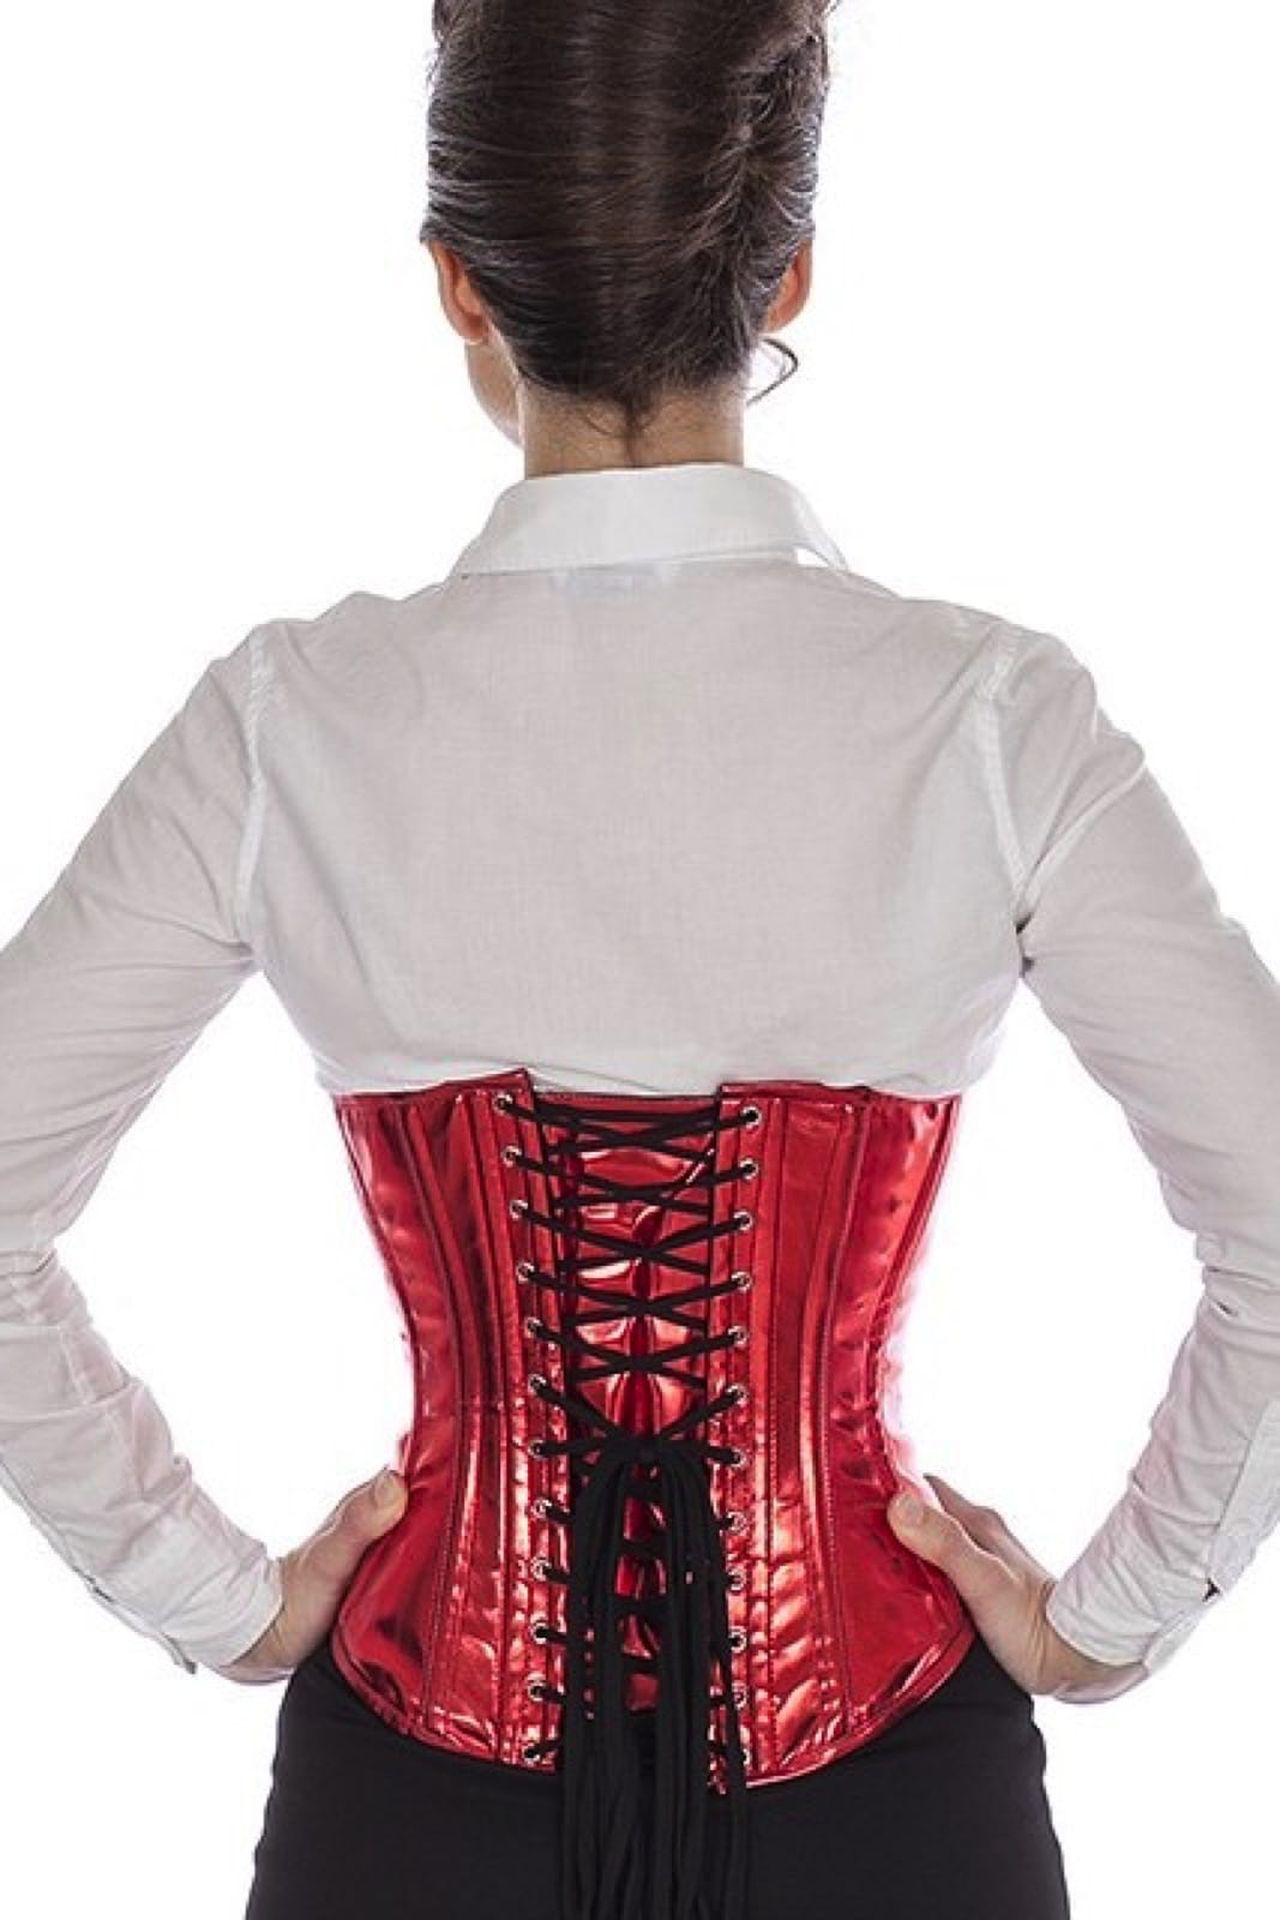 Lak corset rood glitter onderborst Korset puG1